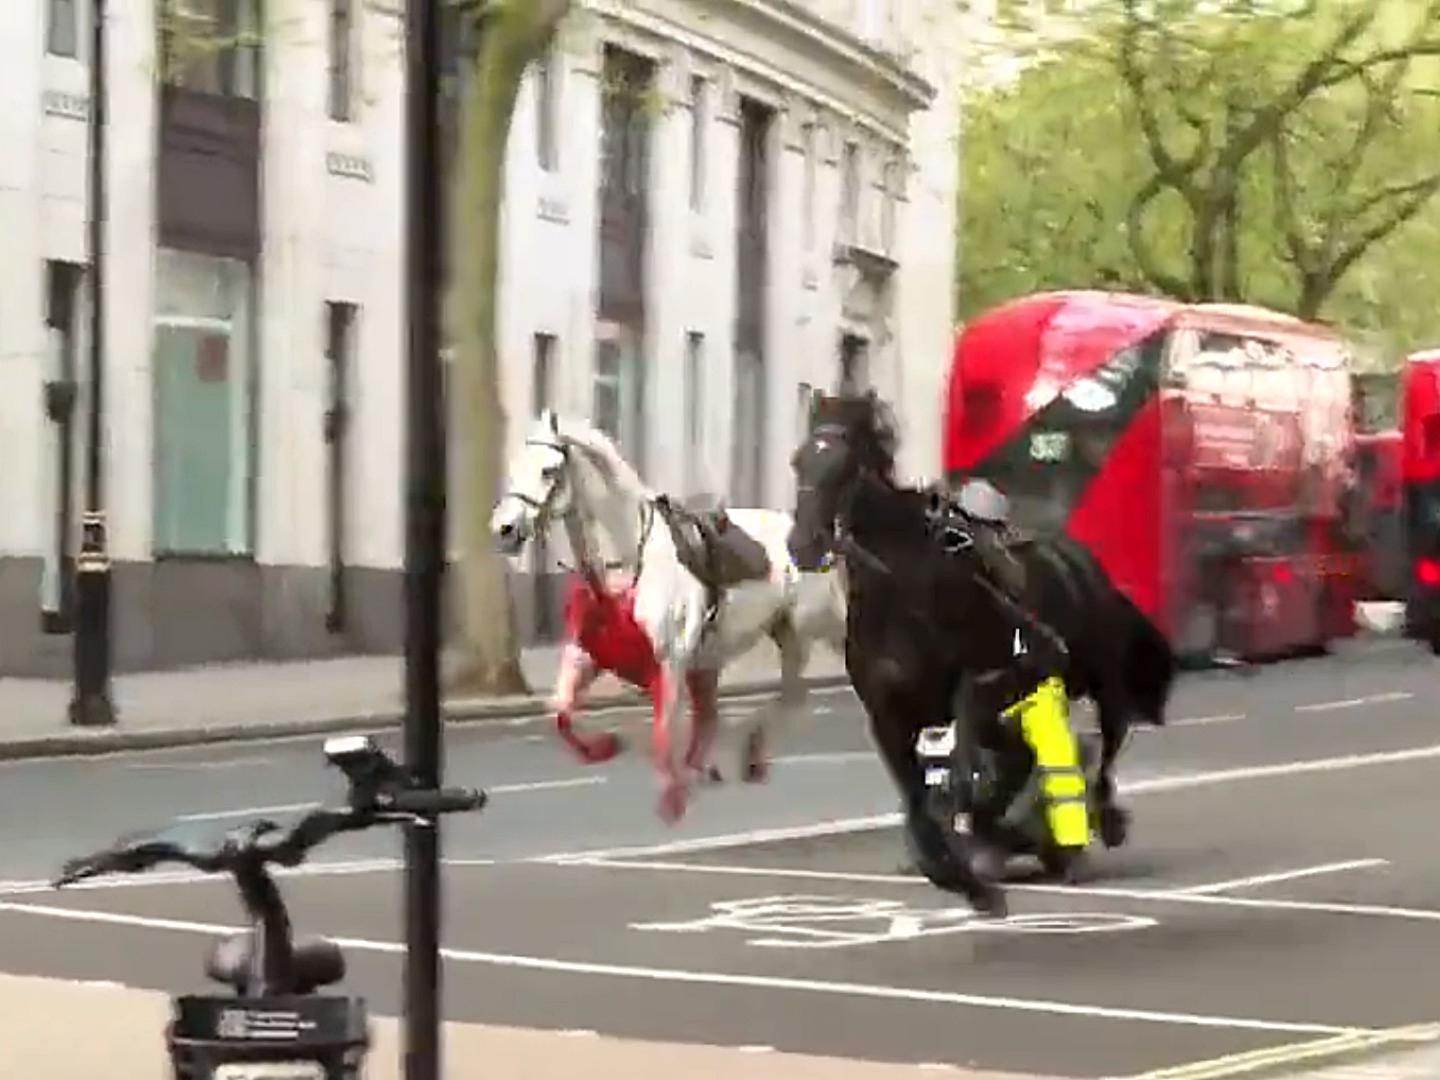 Video | Caballos Desbocados Siembran Pánico en Londres; Hay 4 Personas Heridas